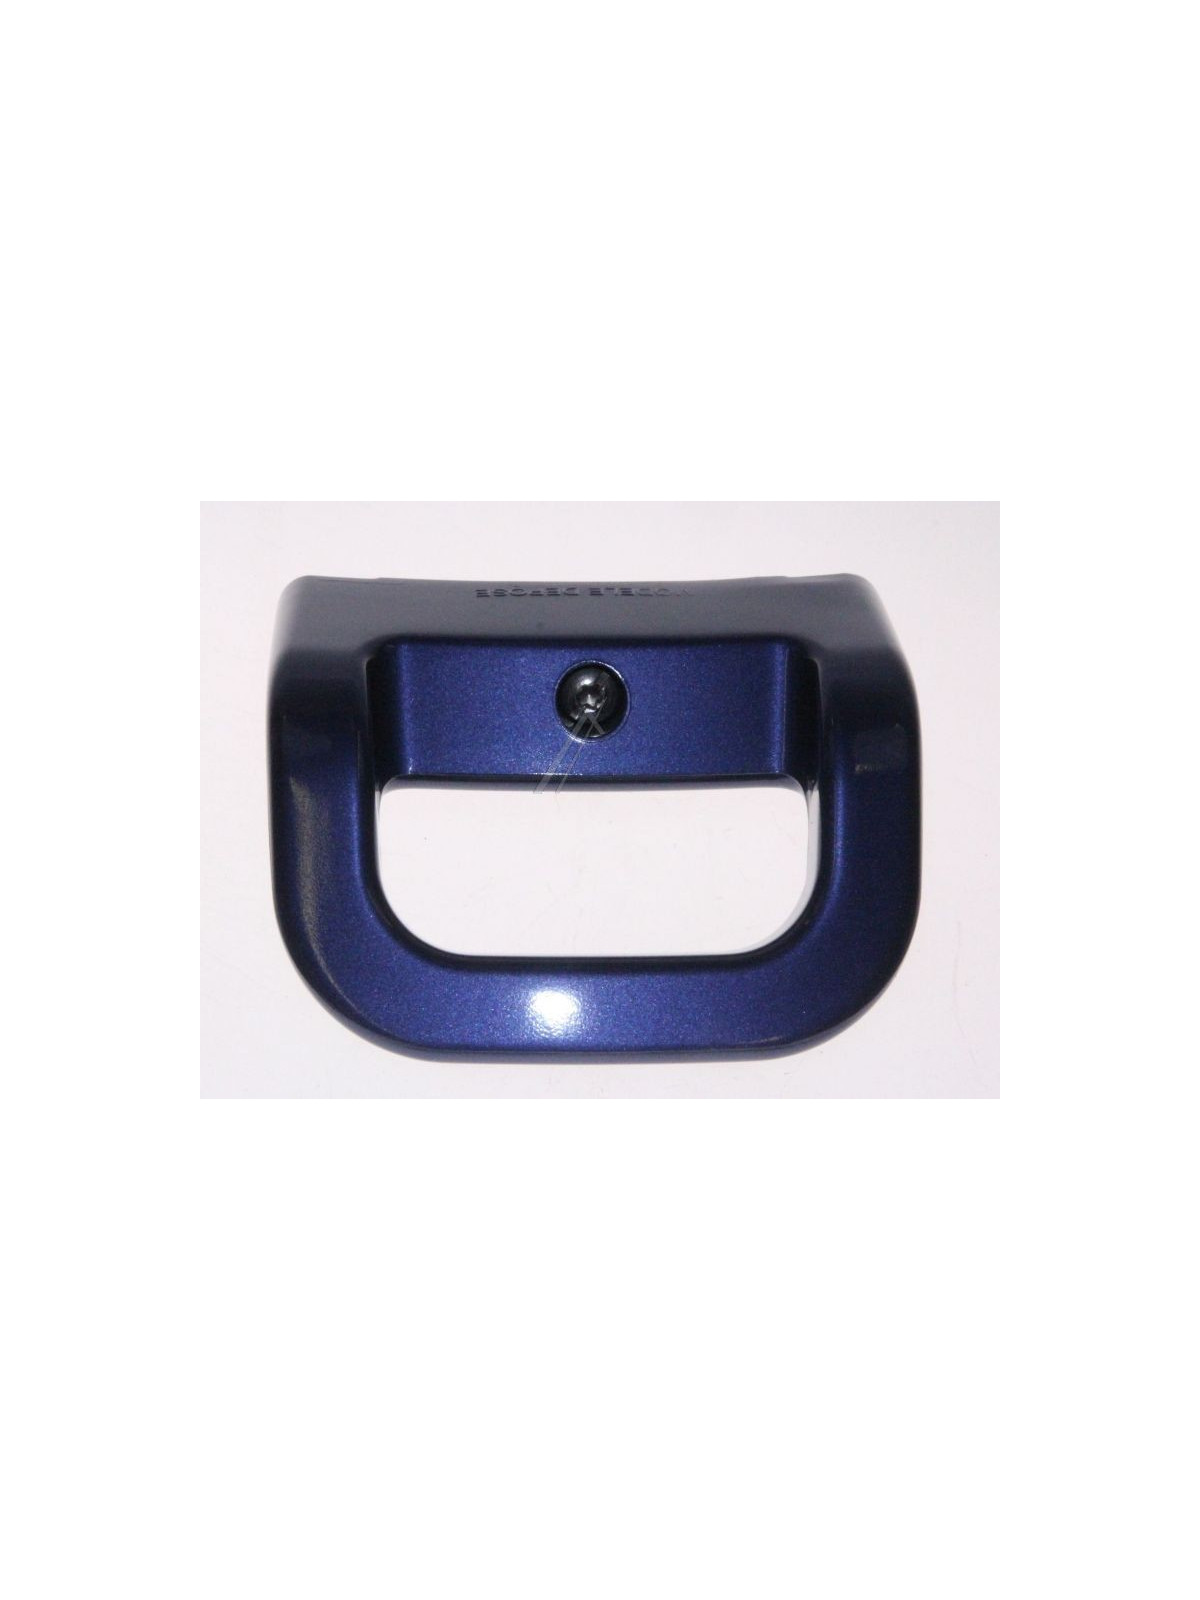 Poignée de cuve bleue Seb Clipso 4 Control - Autocuiseur